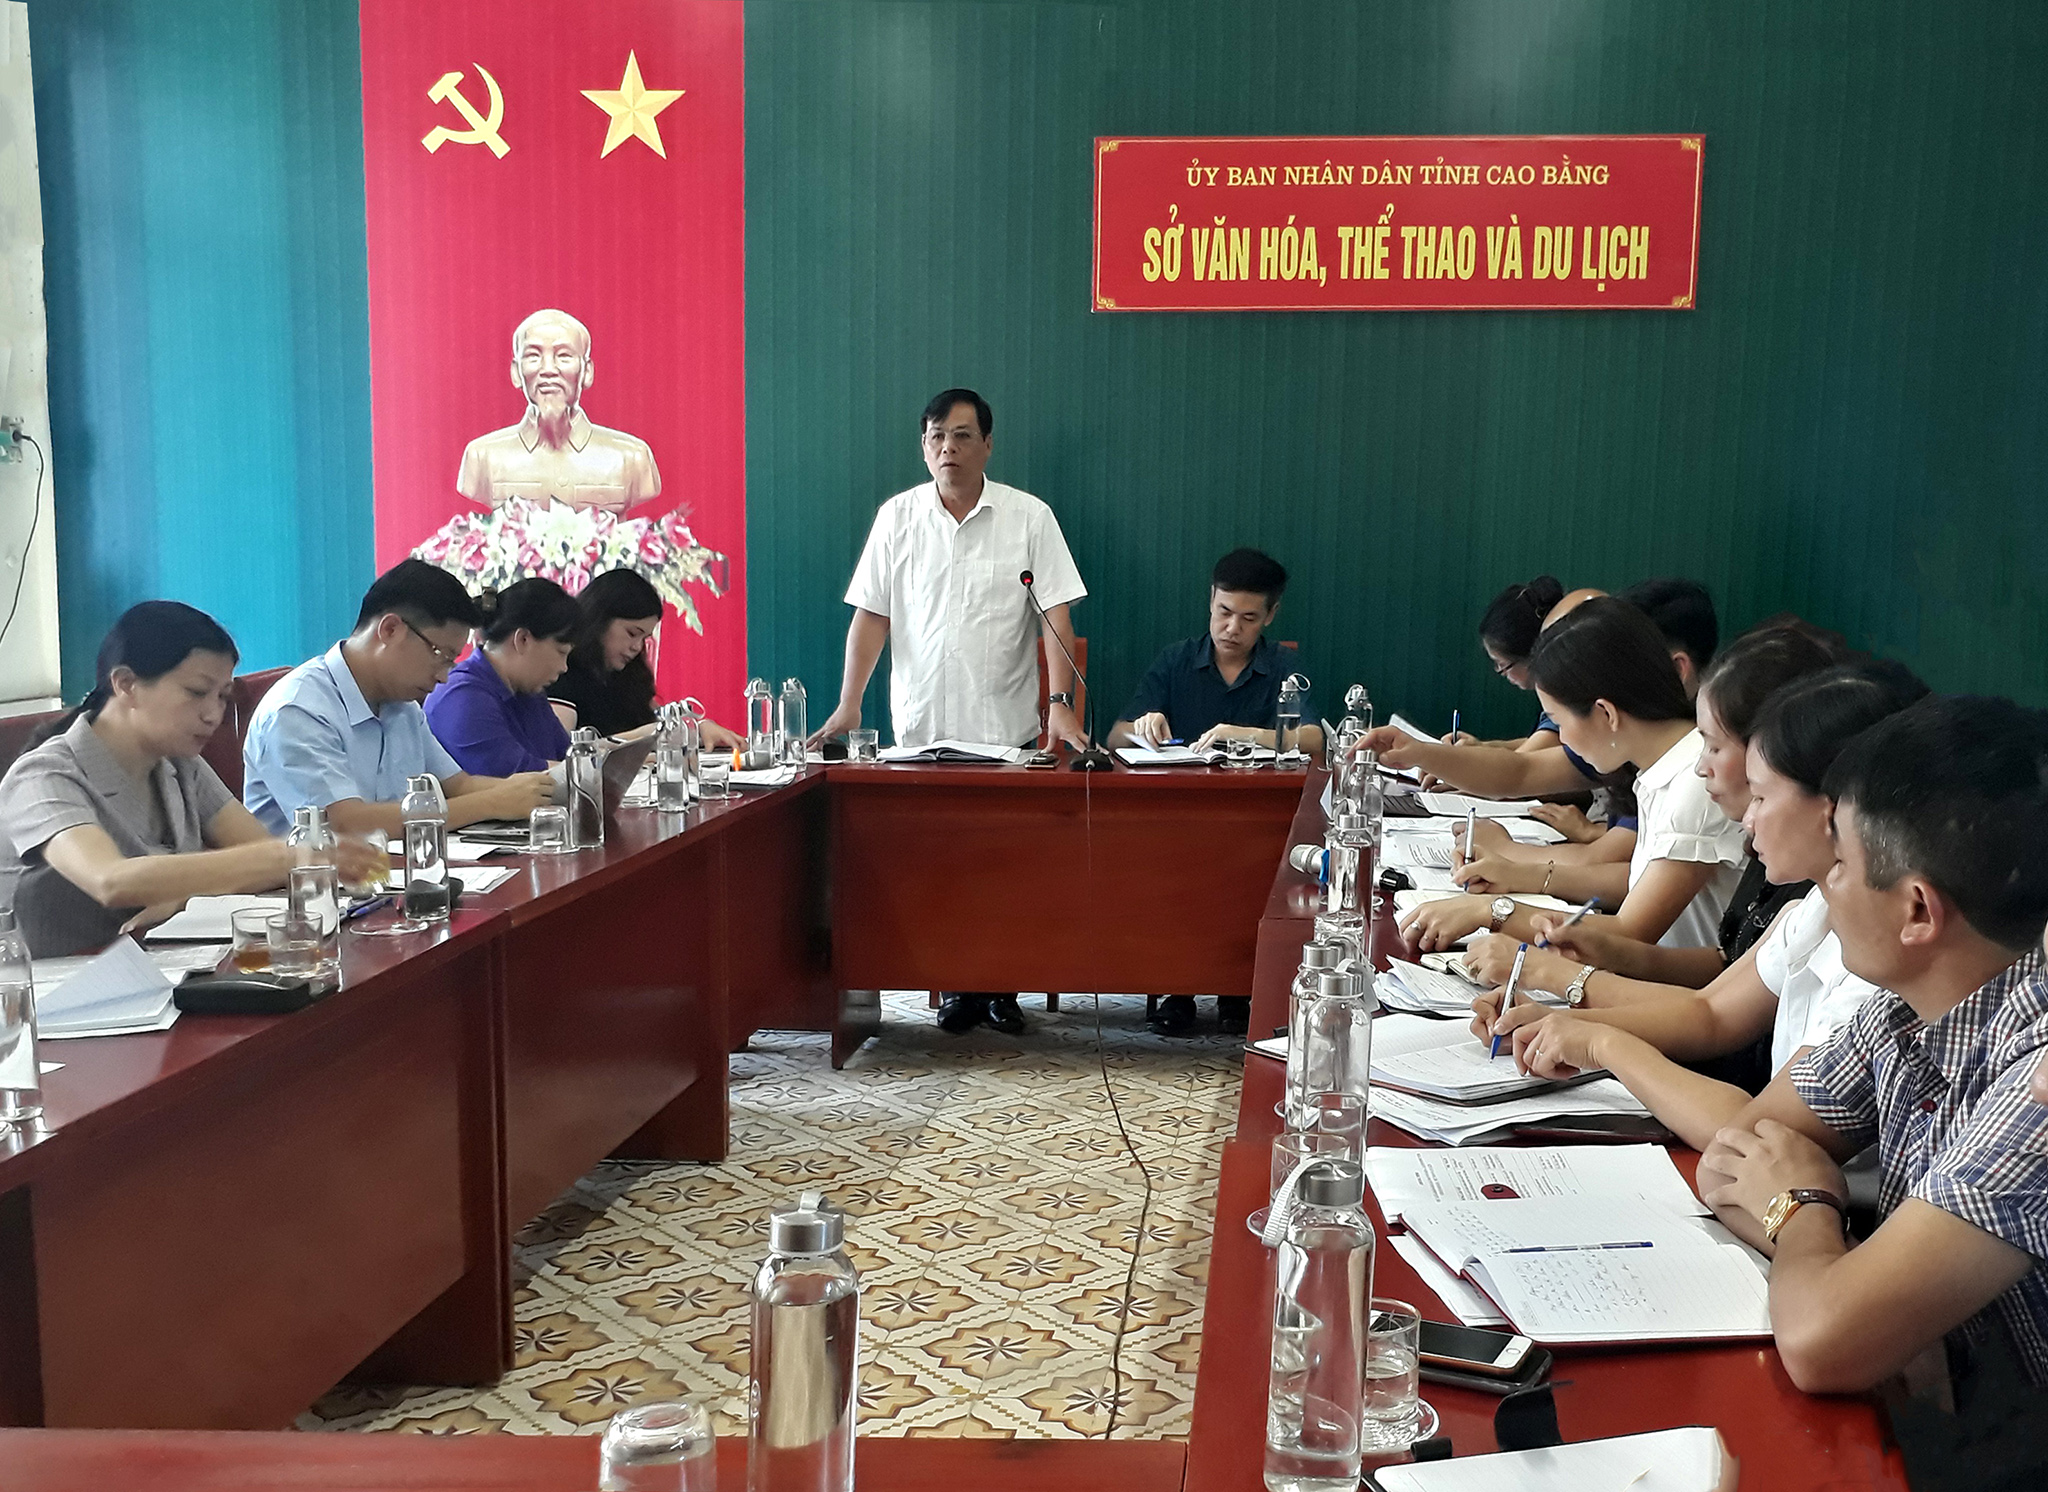 Đoàn giám sát của Ban Văn hóa - Xã hội, Hội đồng nhân dân tỉnh Cao Bằng làm việc với Sở Văn hóa, Thể thao và Du lịch tỉnh Cao Bằng